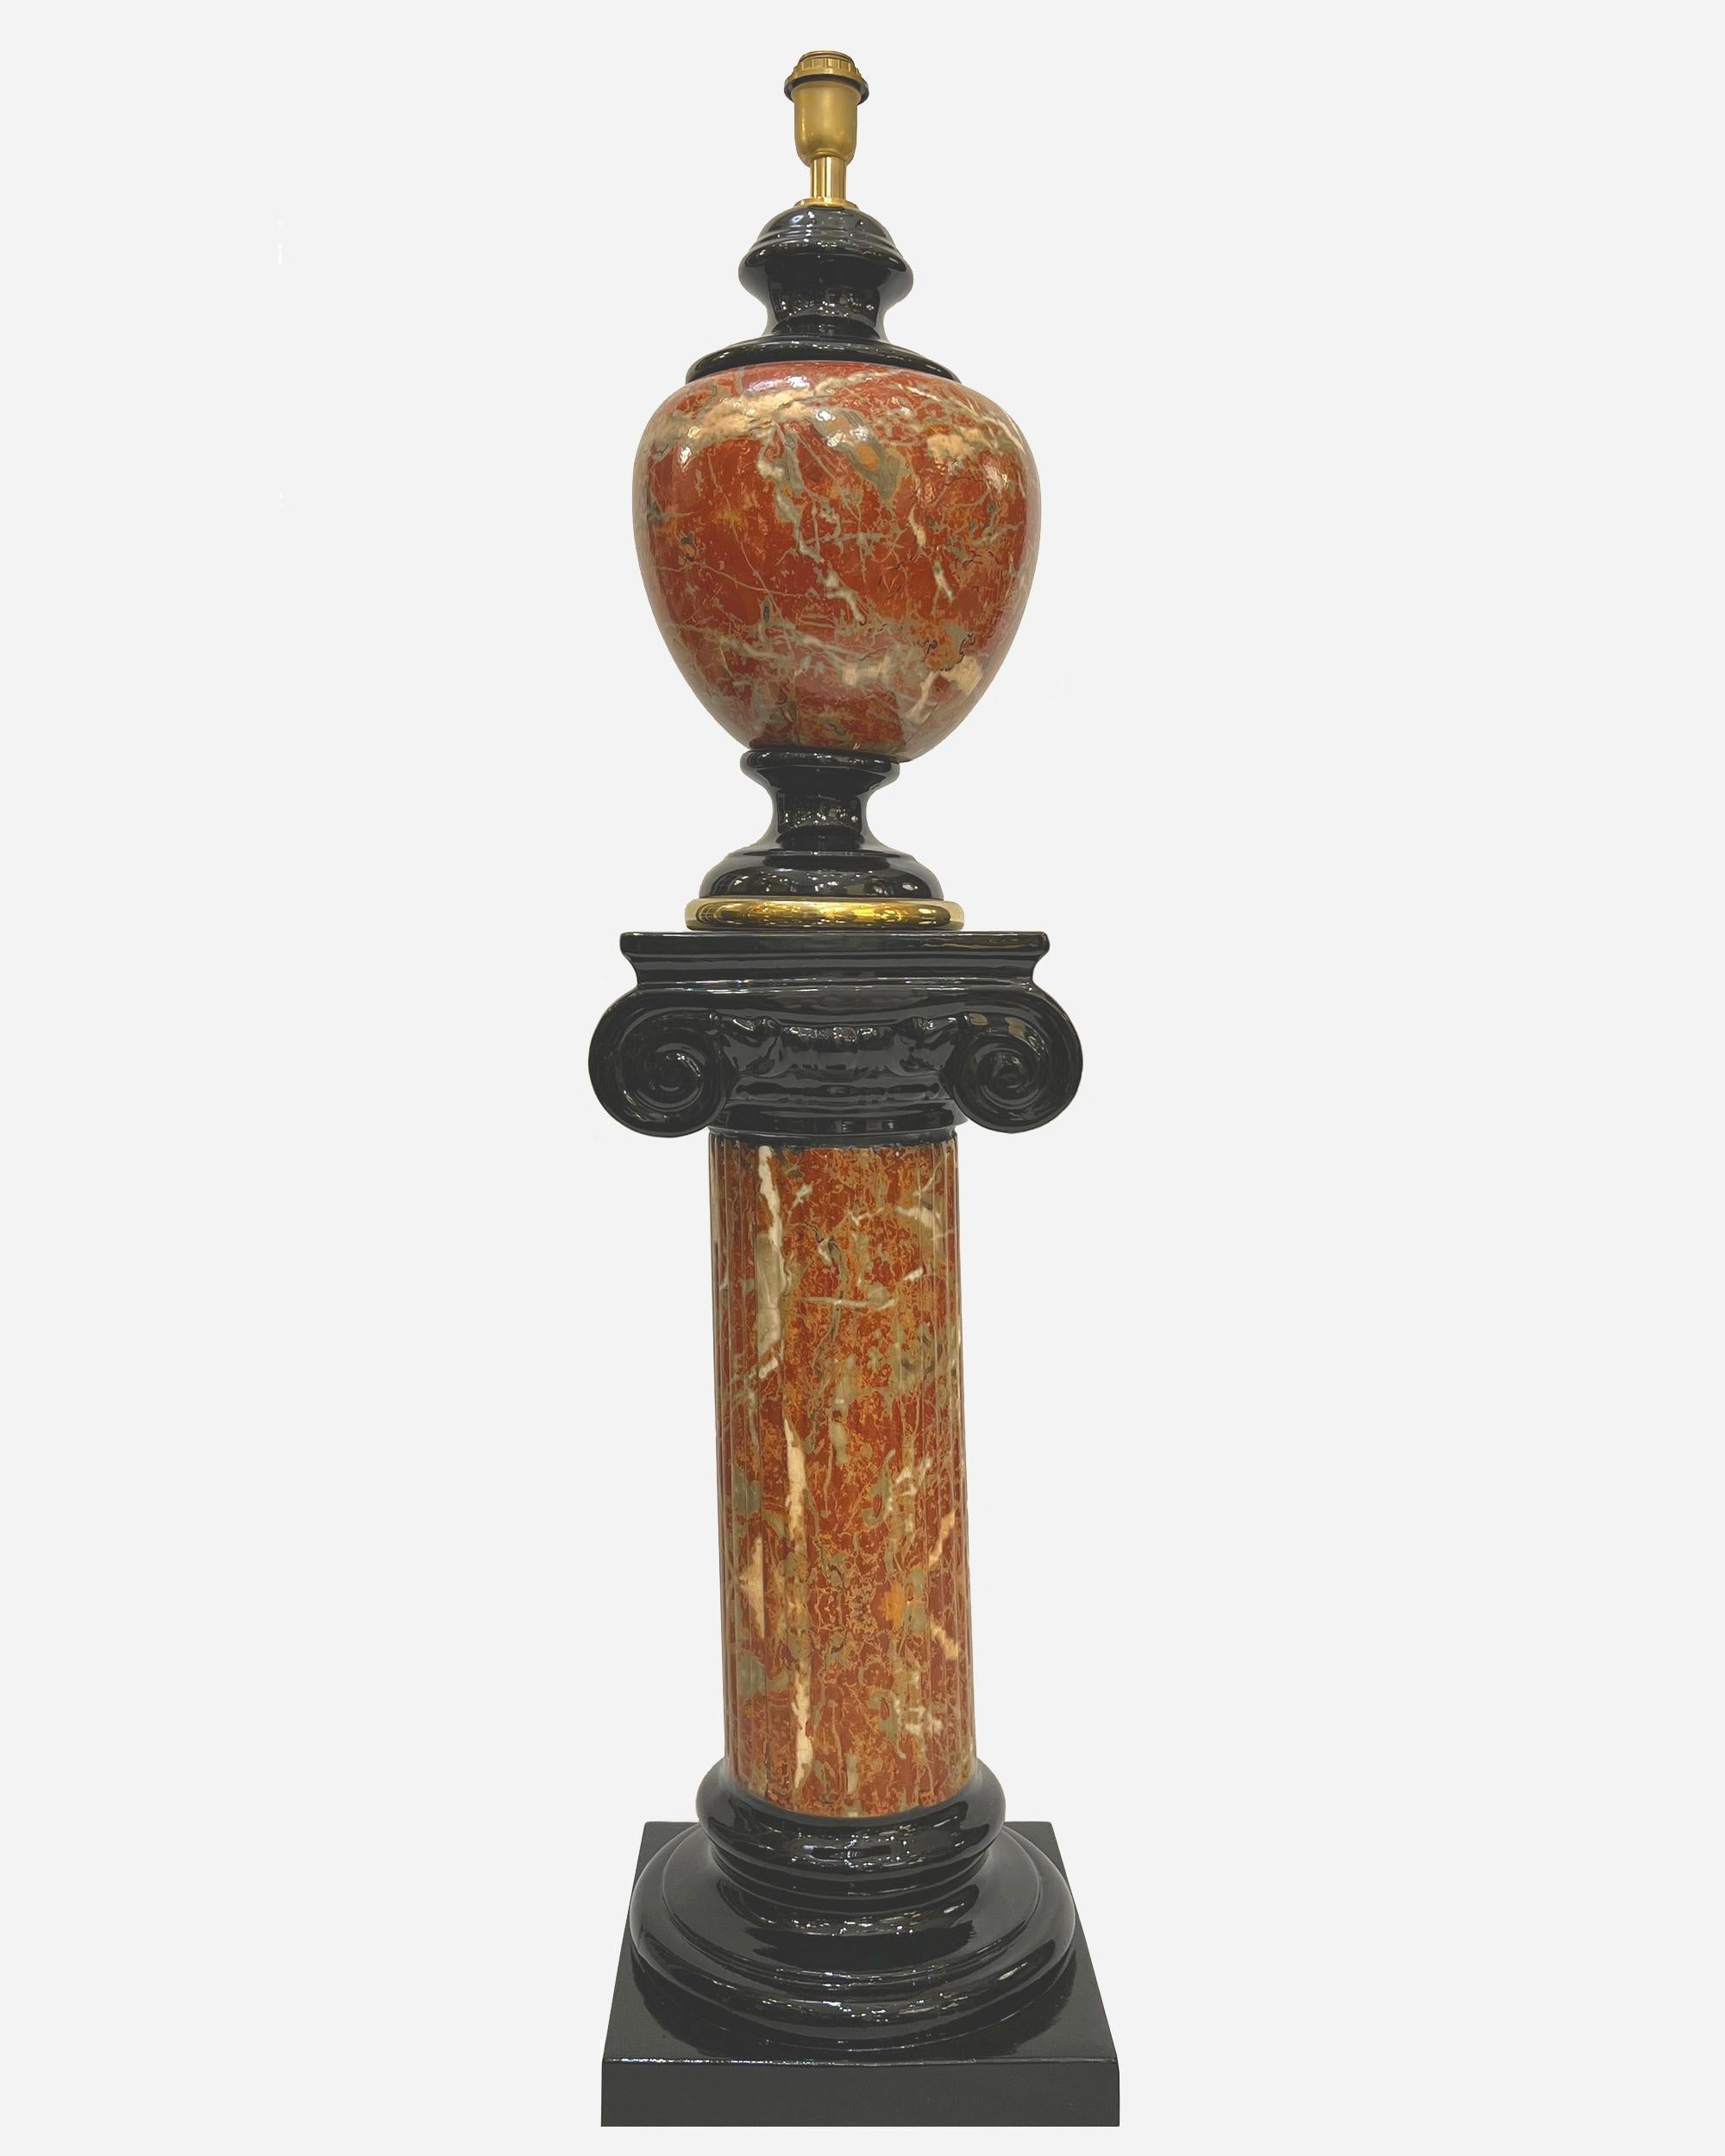 Paar Keramiklampen und -säulen, mit emailliertem Trompe-l'Oeil-Dekor aus grau-weiß geädertem rotem Marmor und schwarzem Lack. Die Sockel der Lampen sind mit einem vergoldeten Filet versehen.
Höhe der Lampe: 58 cm (22,8 Zoll)
Durchmesser der Lampe: